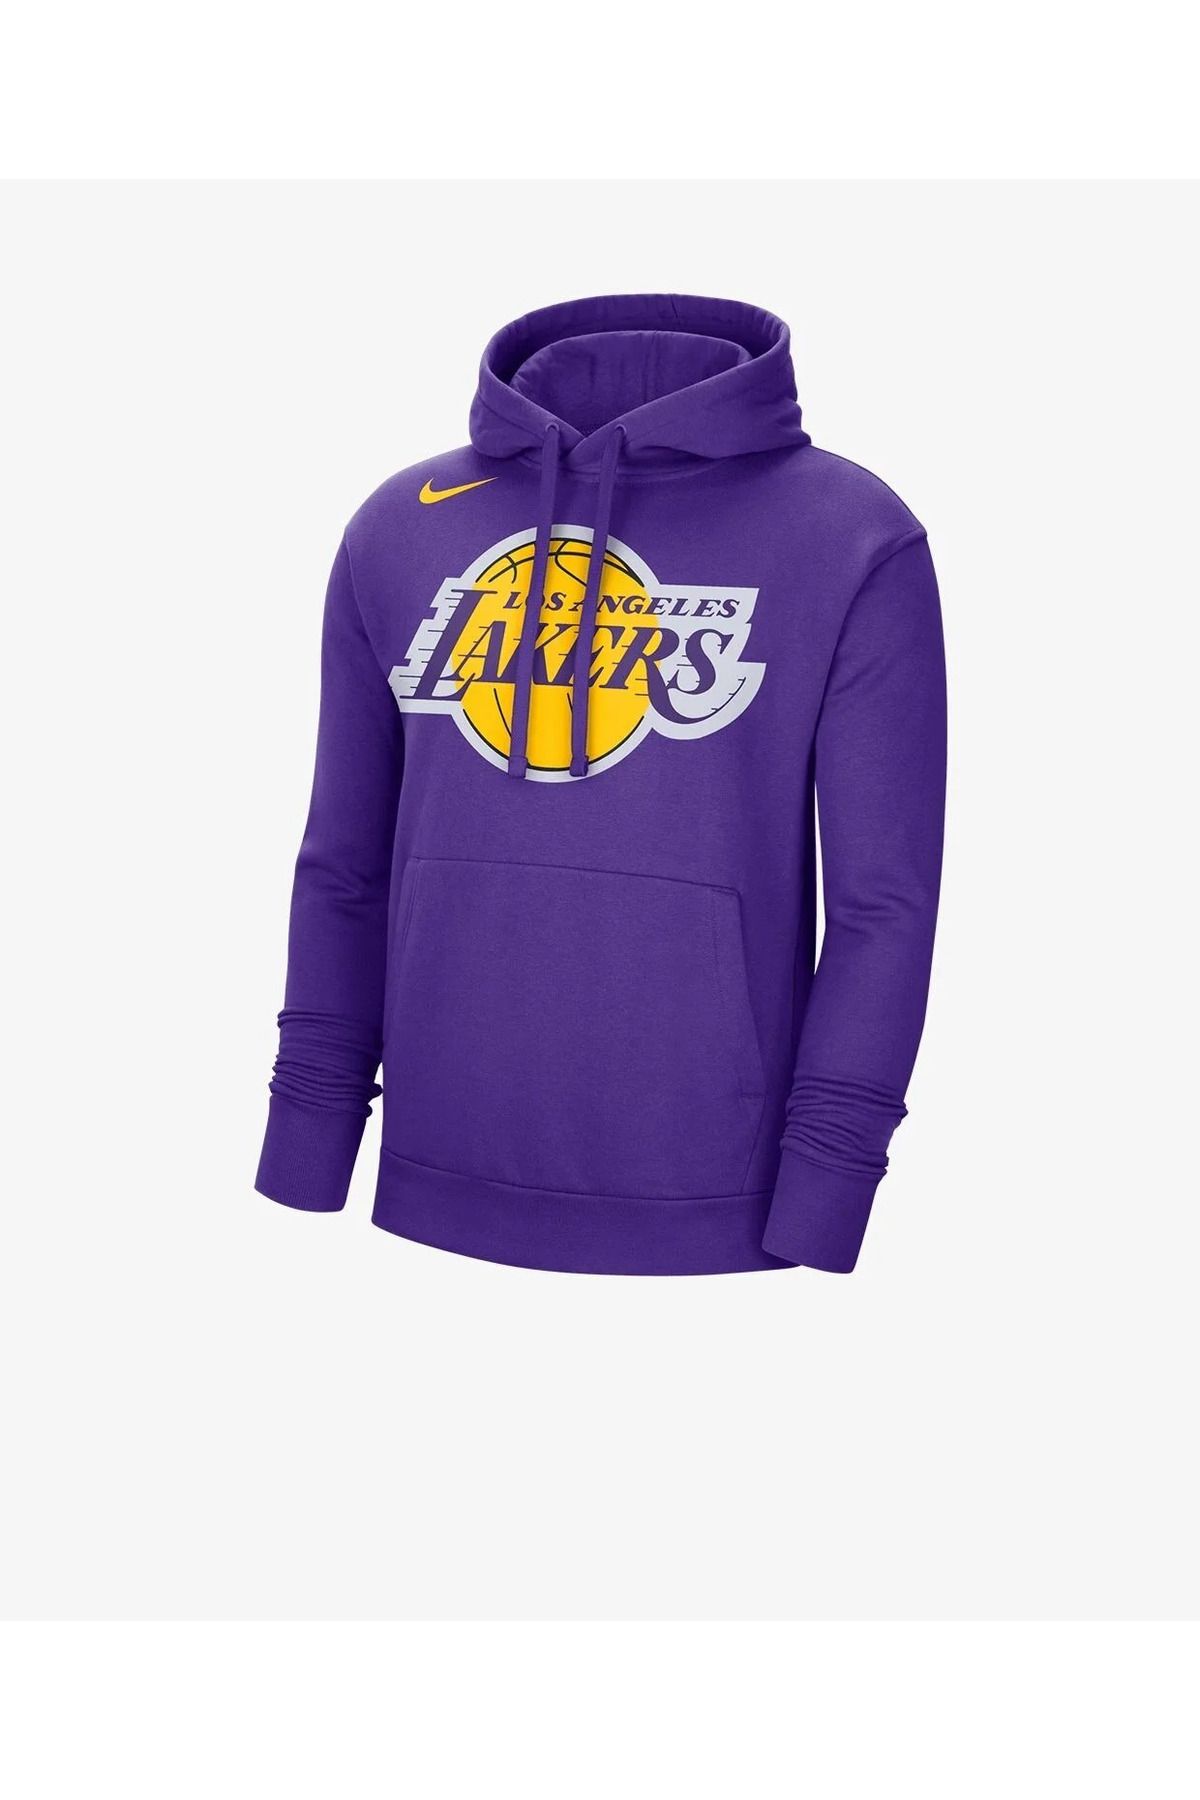 Nike Los Angeles Lakers Sweatshirt